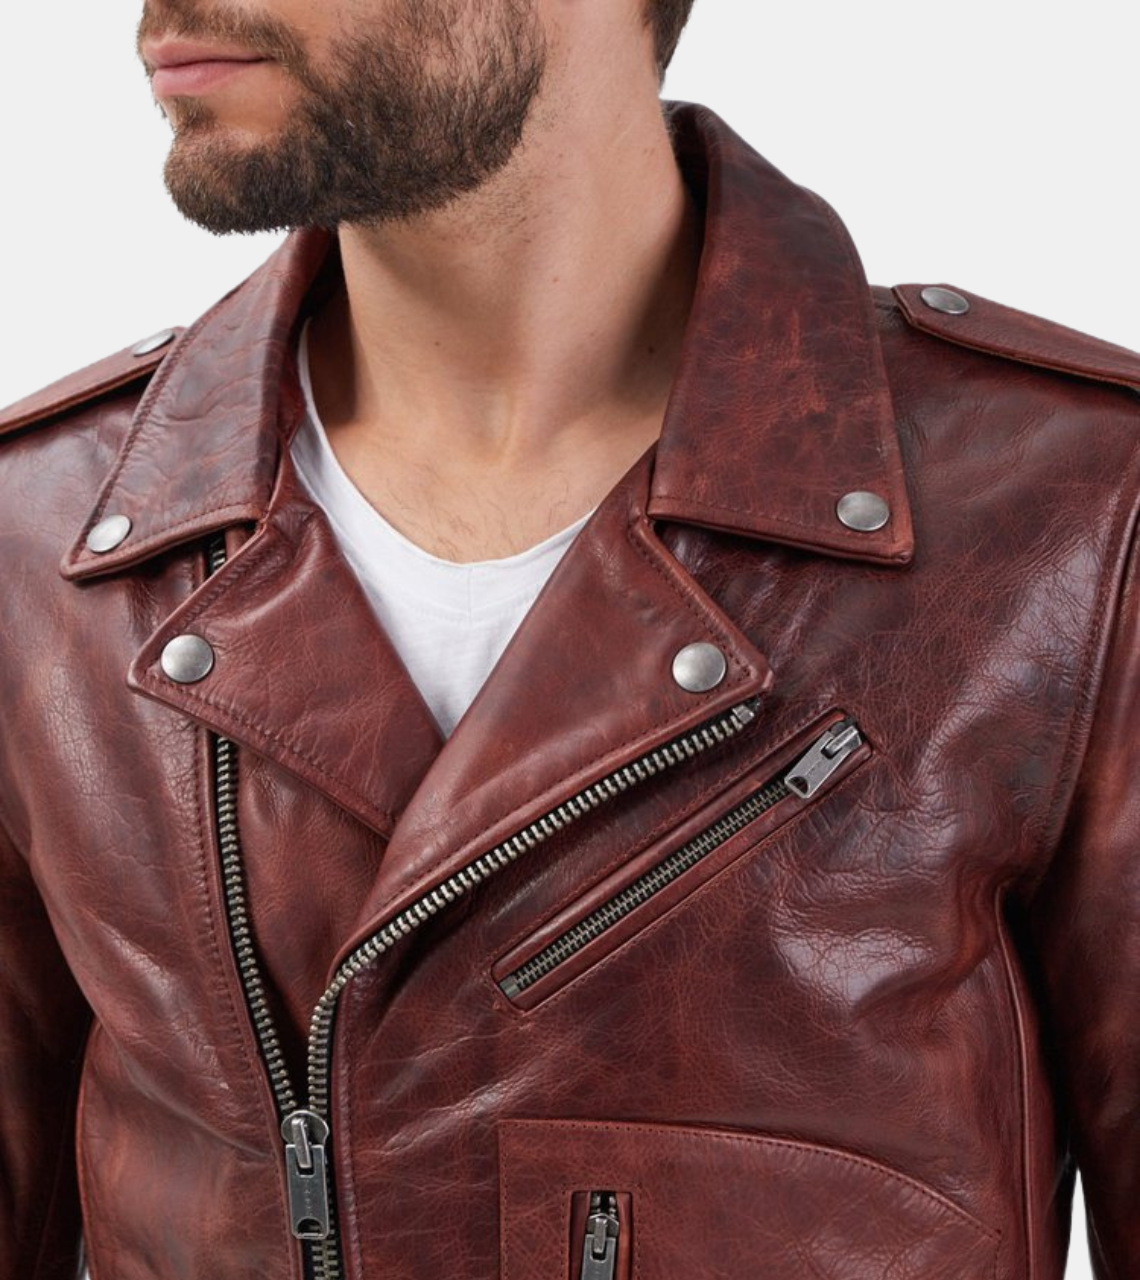 Blanche Men's Brown Biker's Leather Jacket